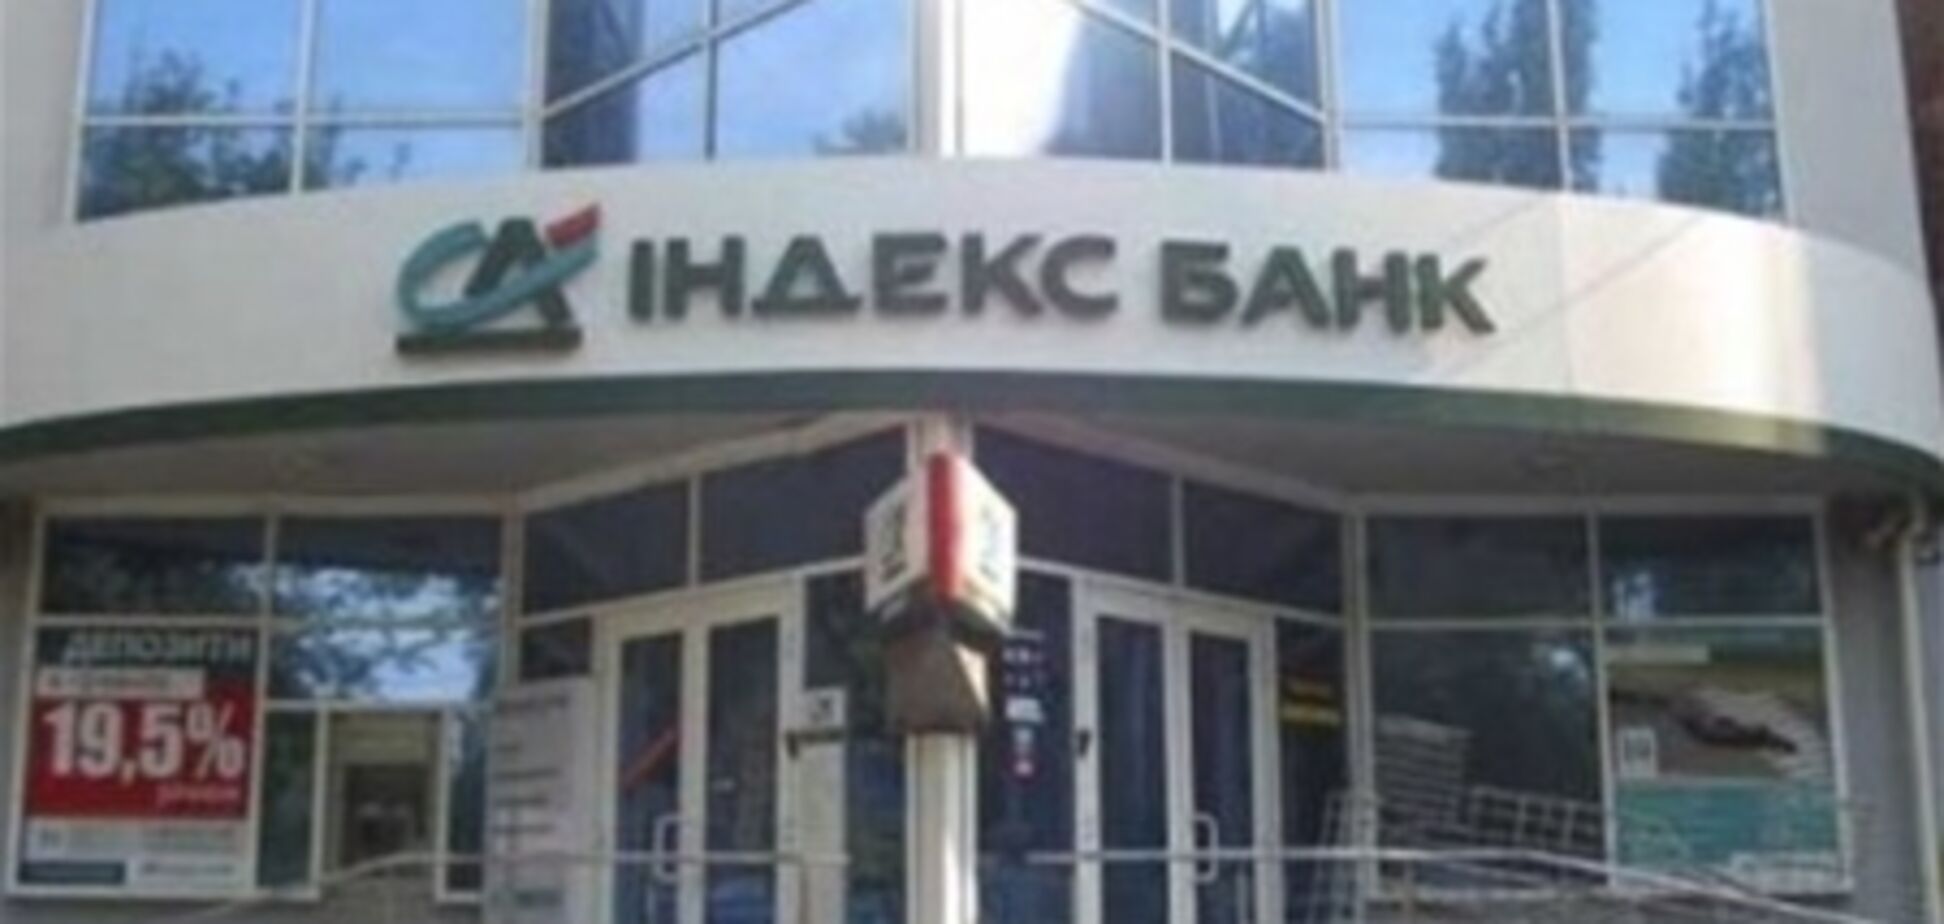 В Украине появились банки с одинаковыми названиями